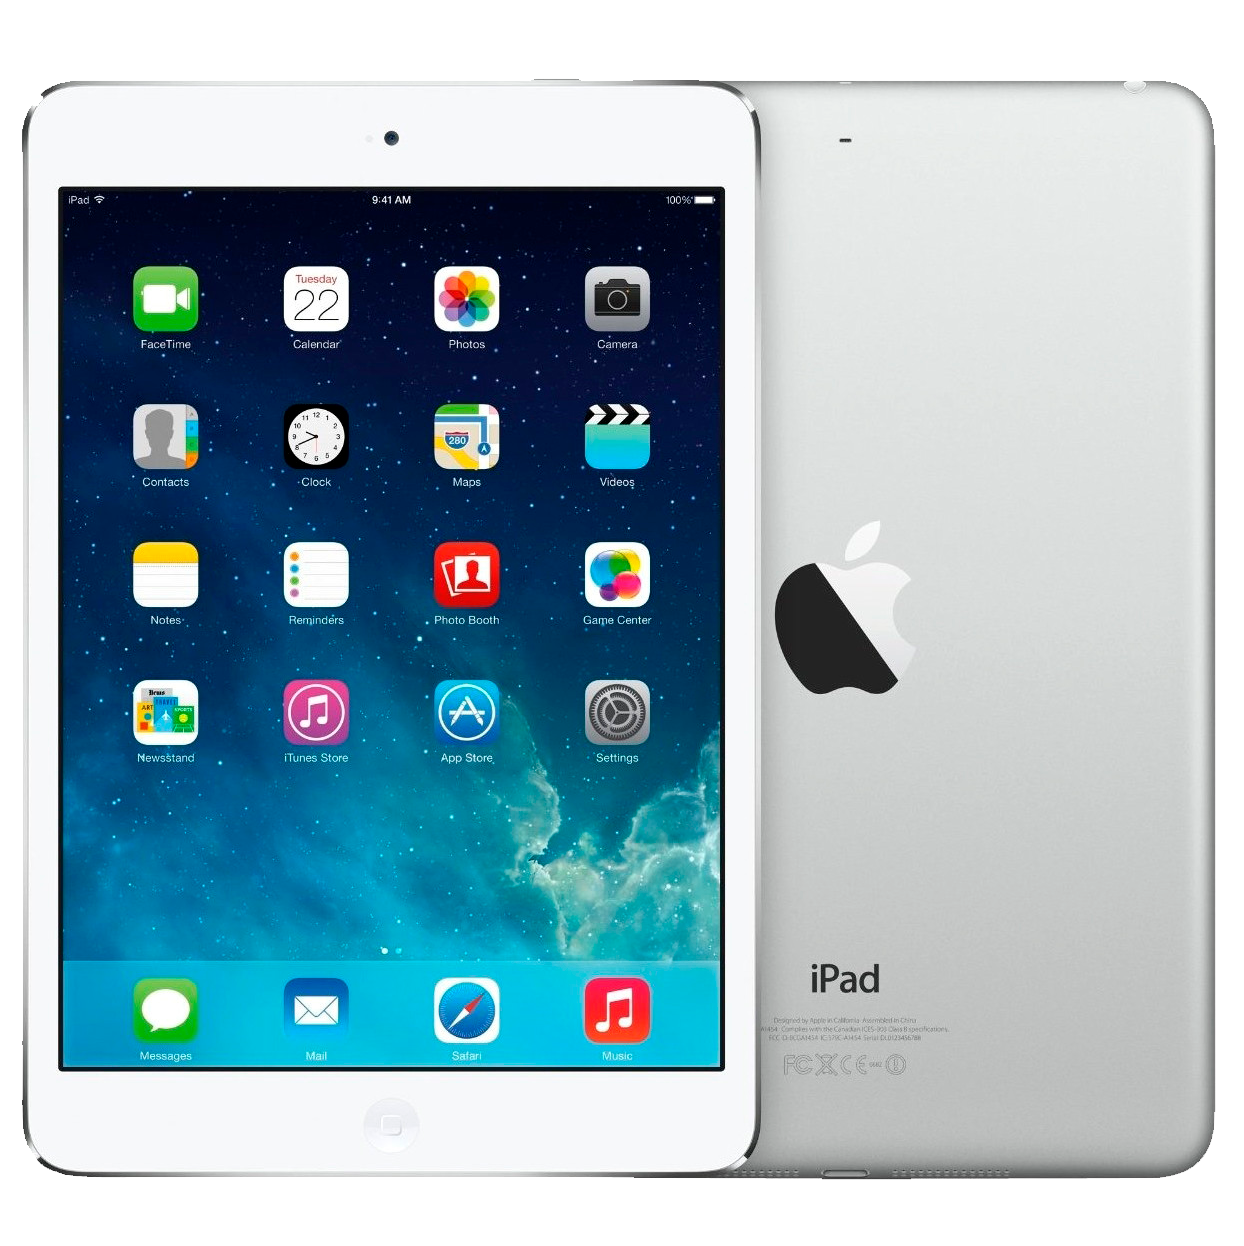 Apple iPad Mini 2 LTE Impuesto diferencial usado Comprar, Reacondicionado  Apple iPad Mini 2 LTE fiscalidad diferencial